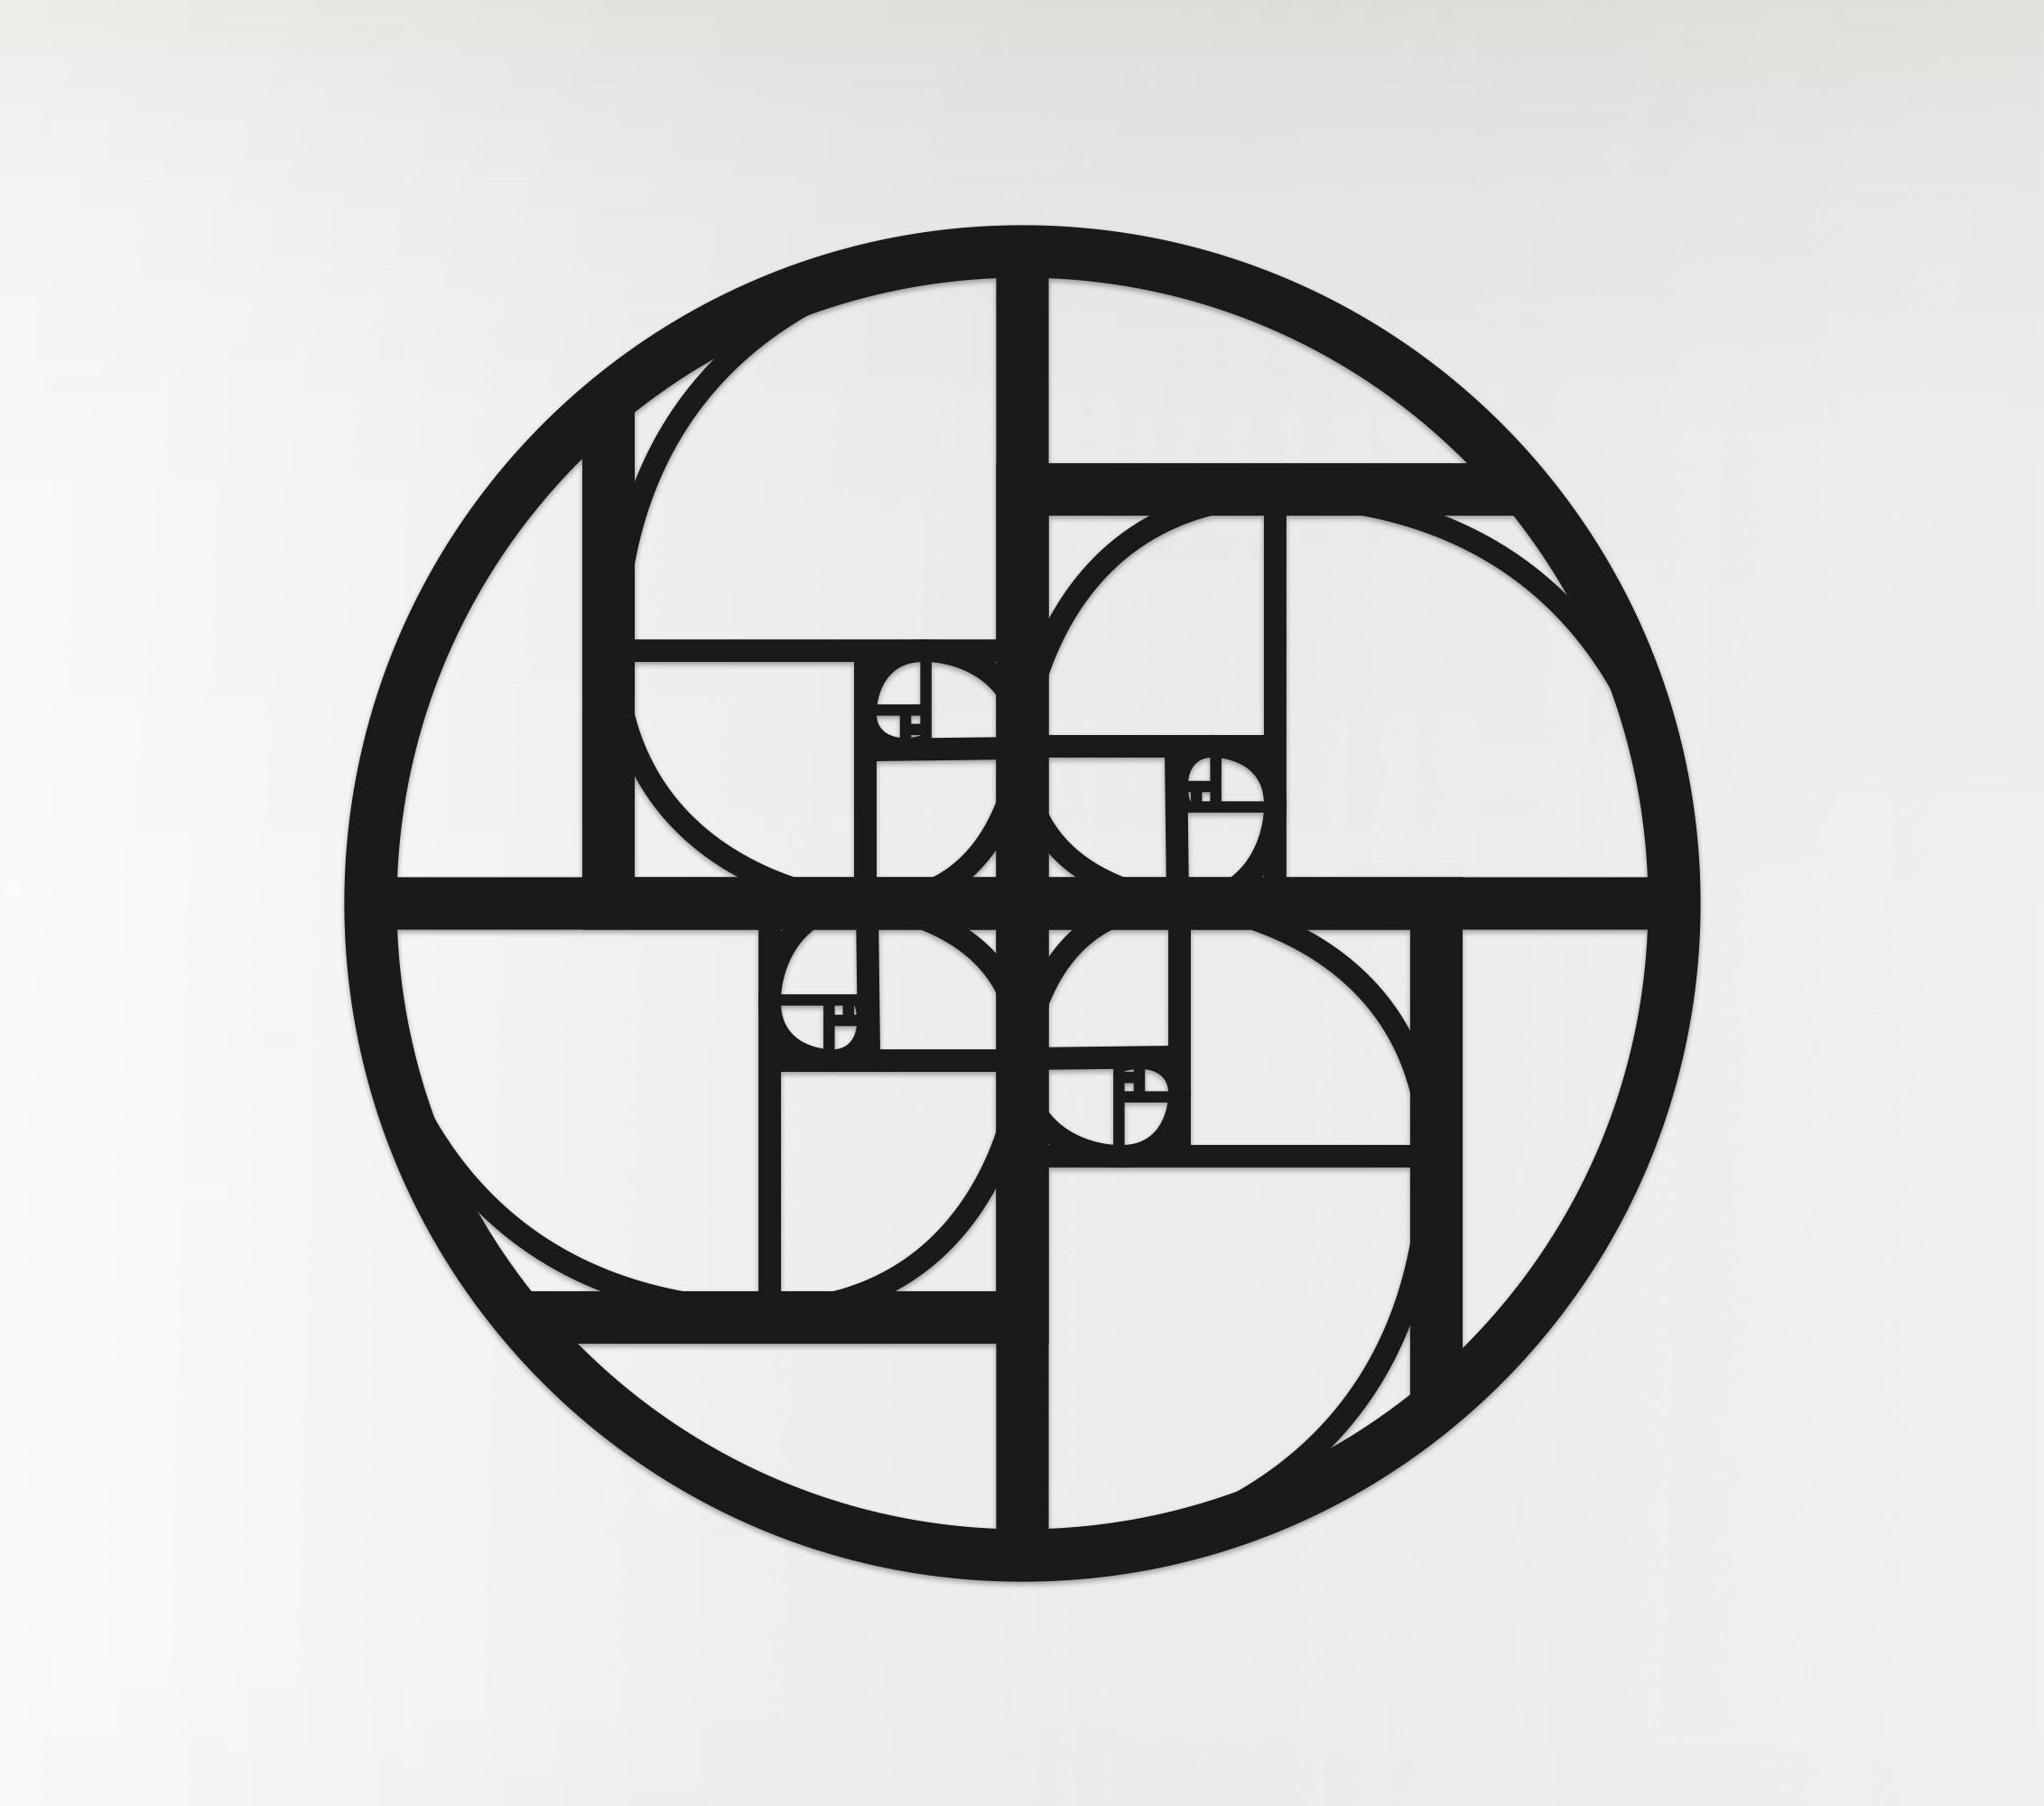 Geometric Fibonacci Circle Art - Wooden Laser Cut Wall Art